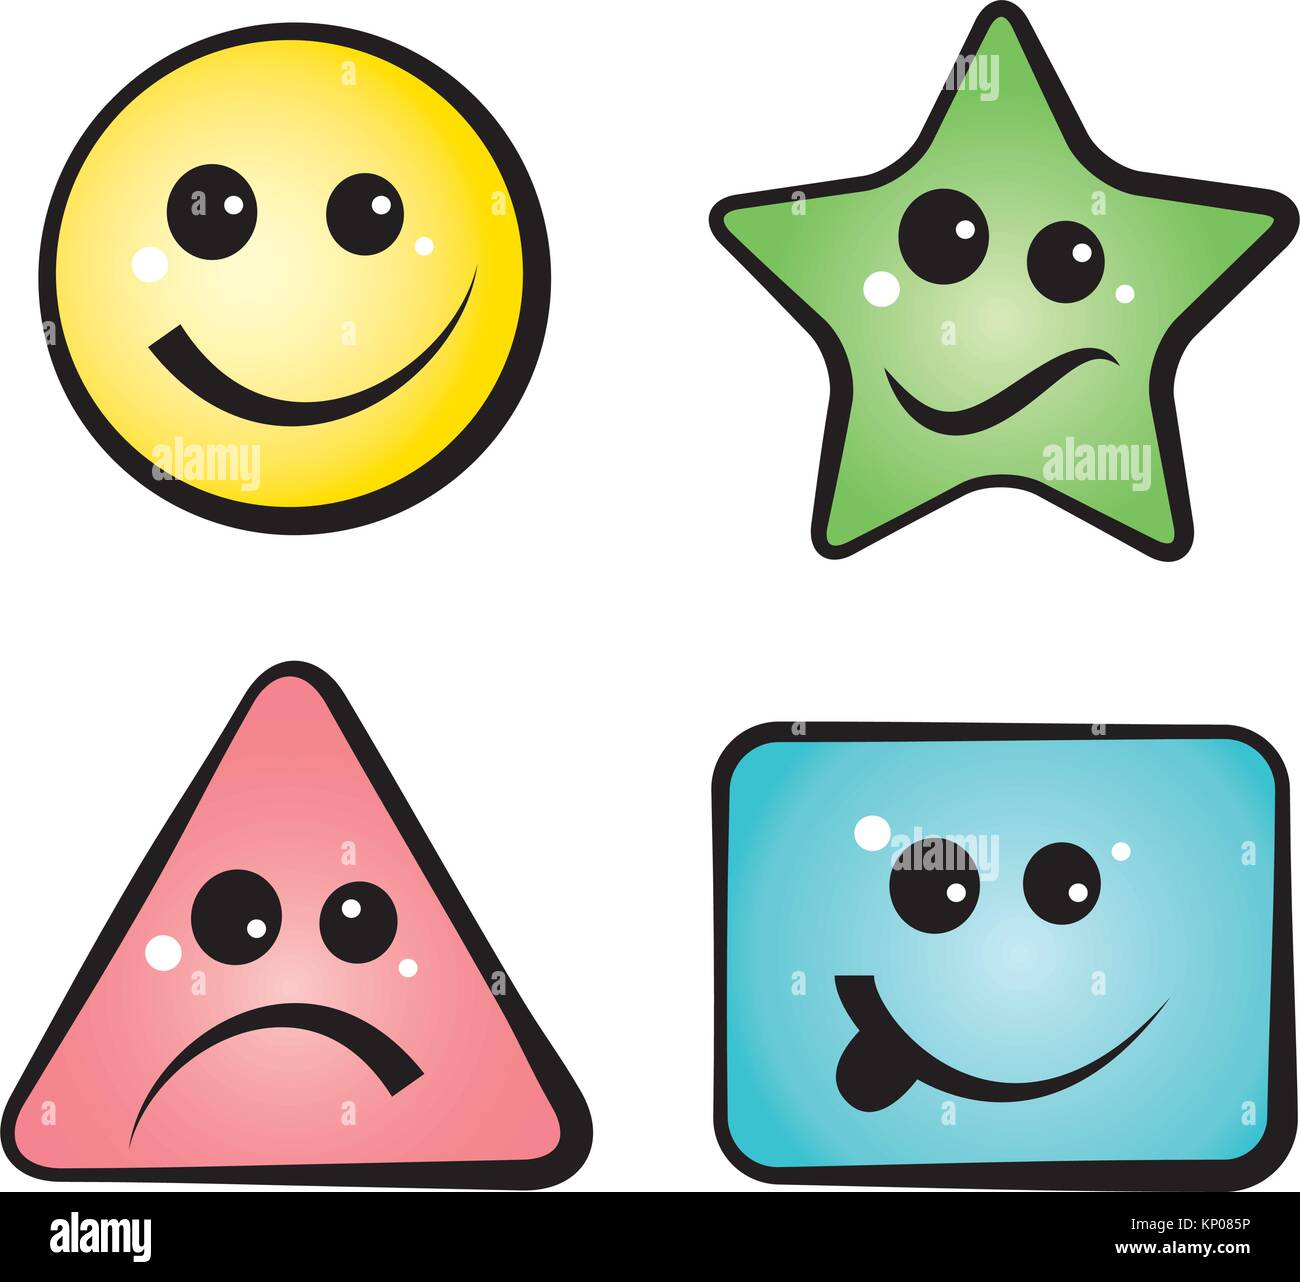 Color Smiley Faces, emoji icons, vector cartoon illustration. Stock Vector